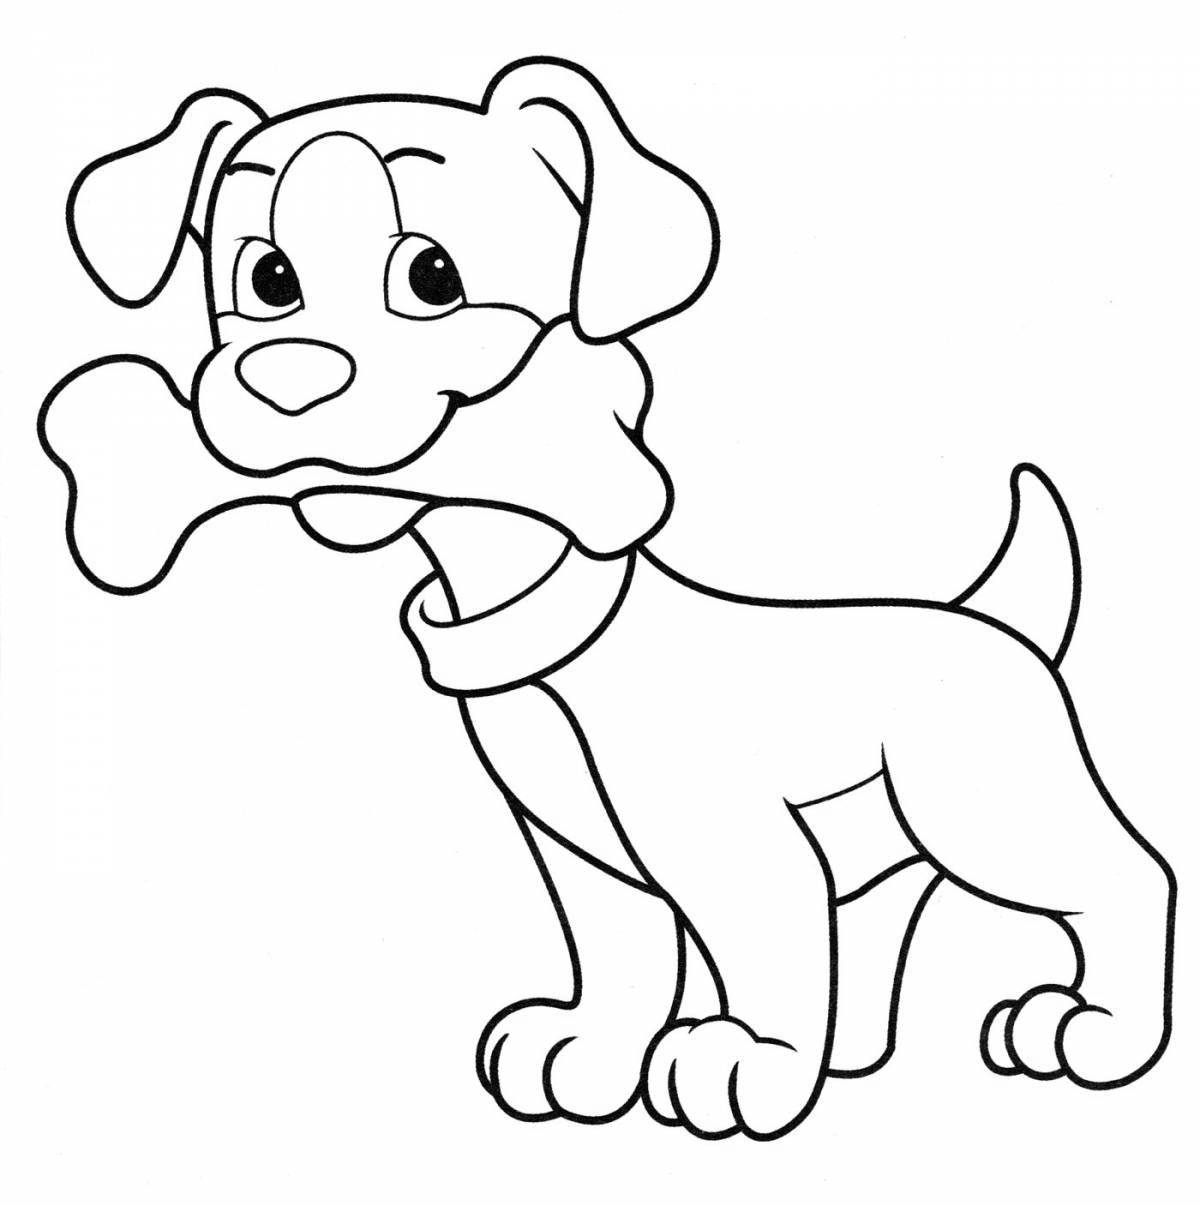 Сладкая раскраска с изображением собаки для детей